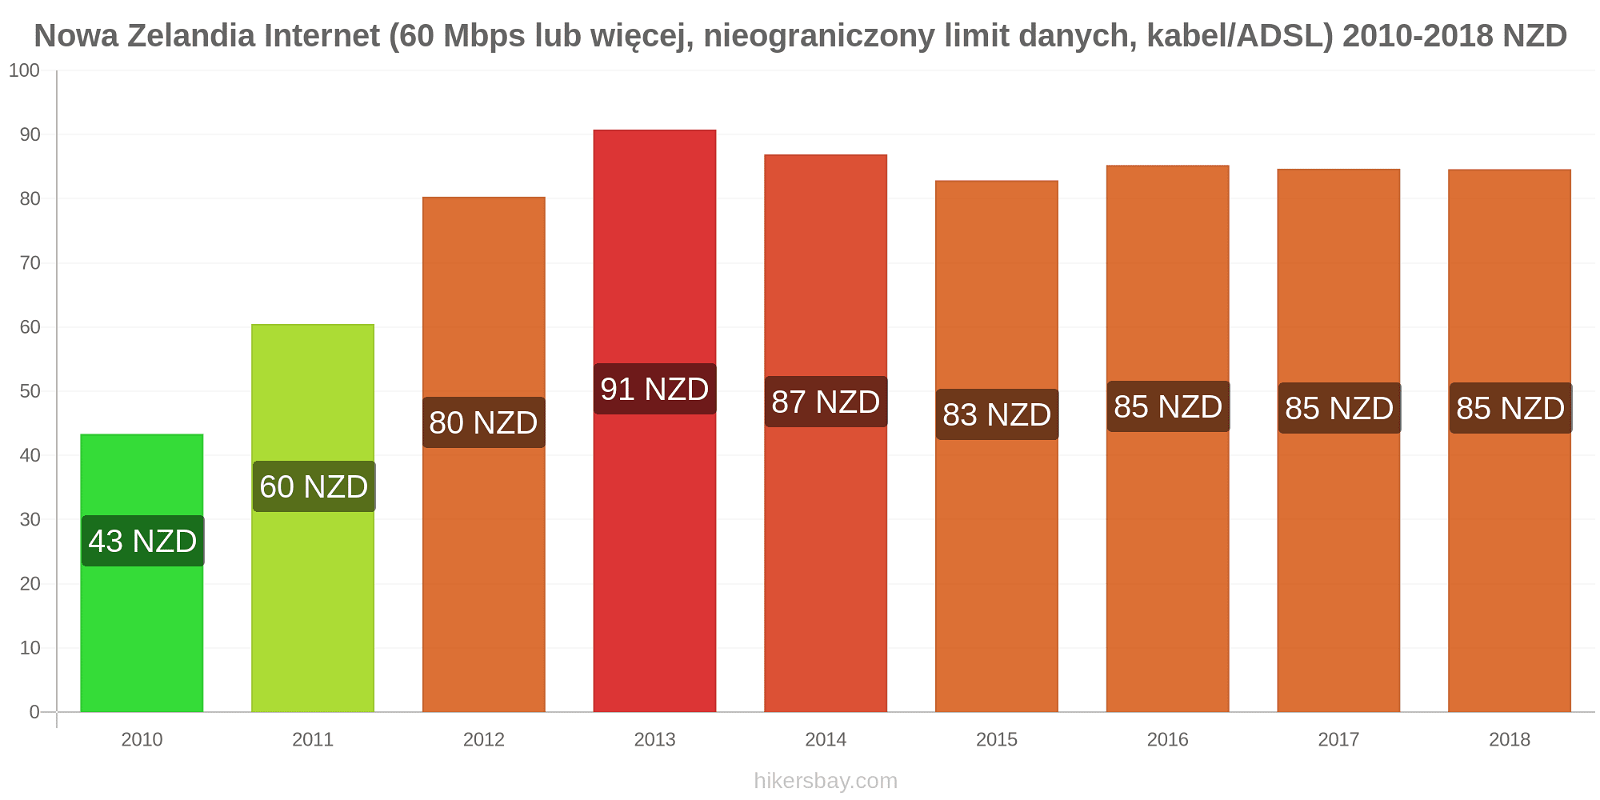 Nowa Zelandia zmiany cen Internet (60 Mbps lub więcej, nieograniczony limit danych, kabel/ADSL) hikersbay.com